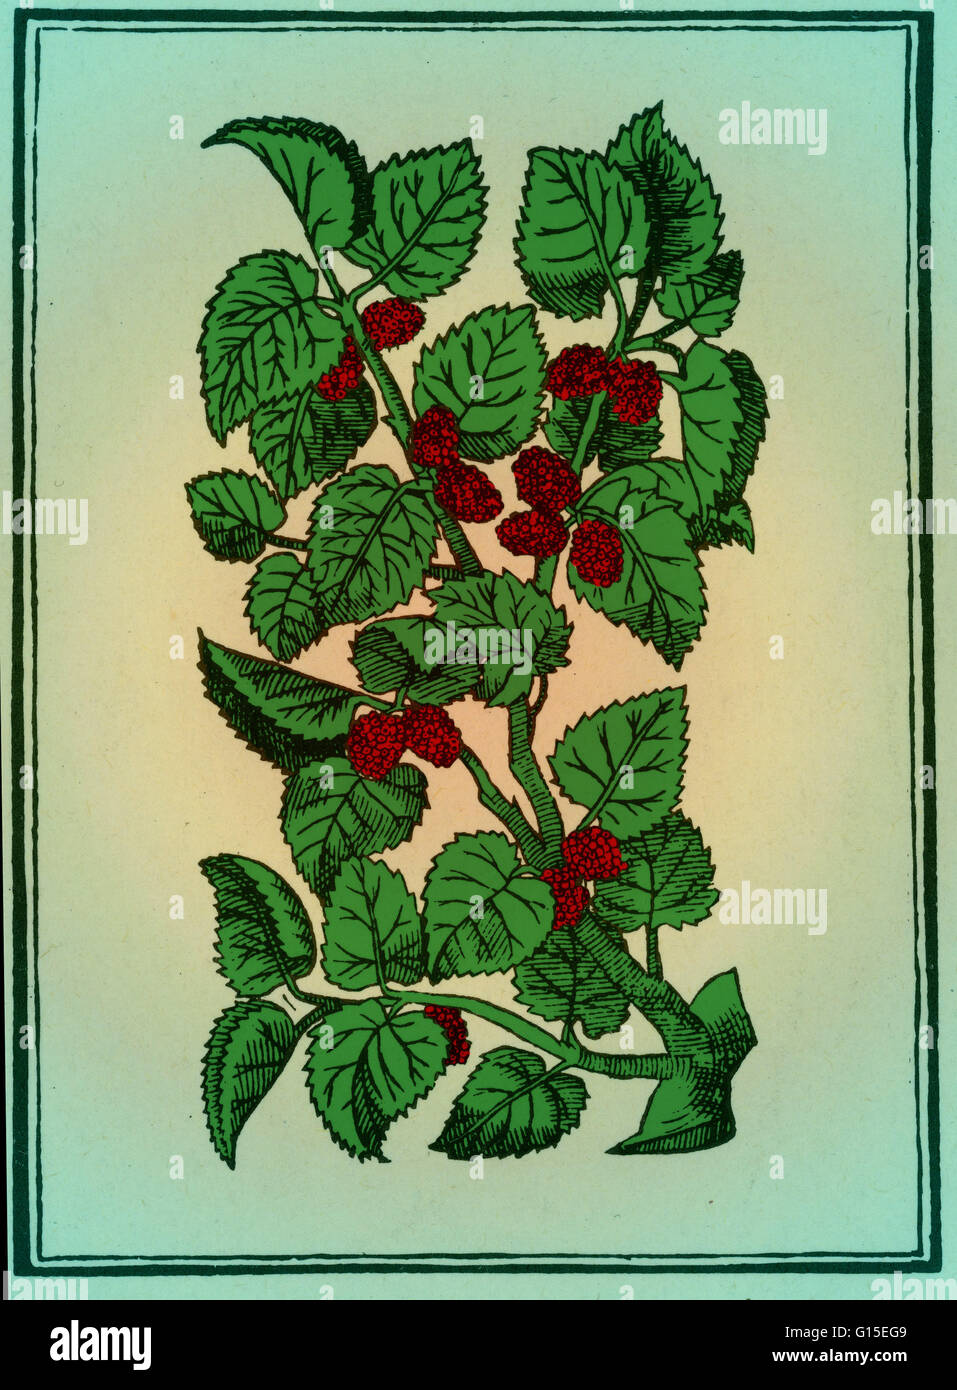 Rosso o di gelso Silkworm albero, dal Mattioli's Commentaires, Lione, 1579. Il Mulberry è stata stimata in tempi antichi. I romani mangiavano gelsi alle loro feste, un fatto noto da le satire di Orazio. Gelsi sono citati anche in Ovidio, che in Foto Stock